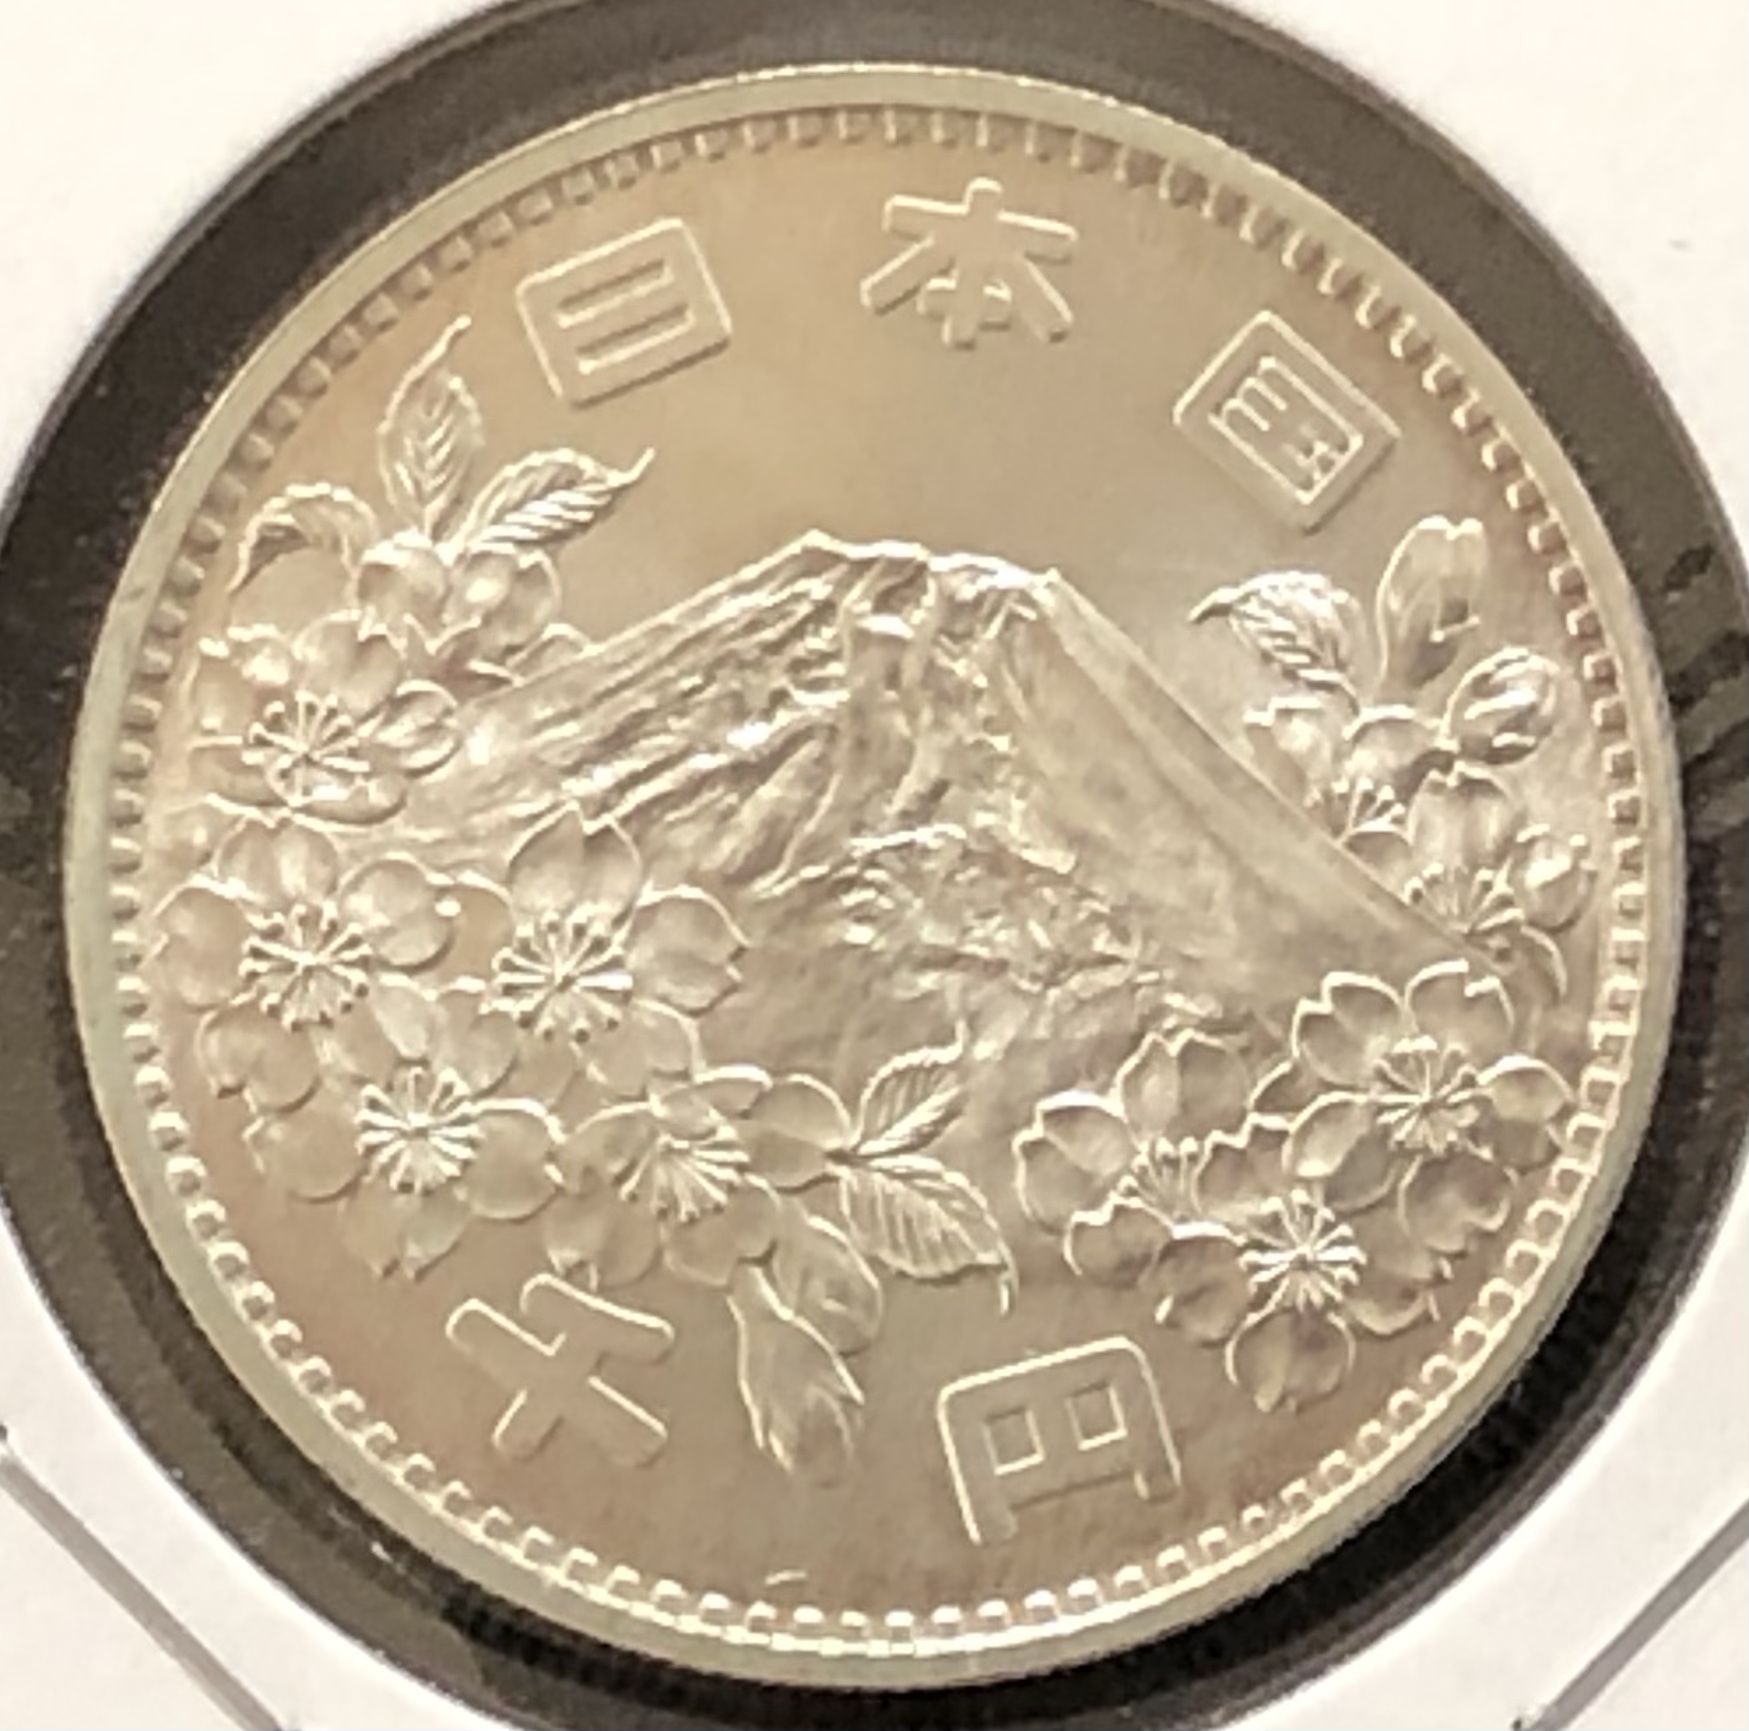 東京オリンピック記念1000円銀貨 1964年 | ファミリースタンプ